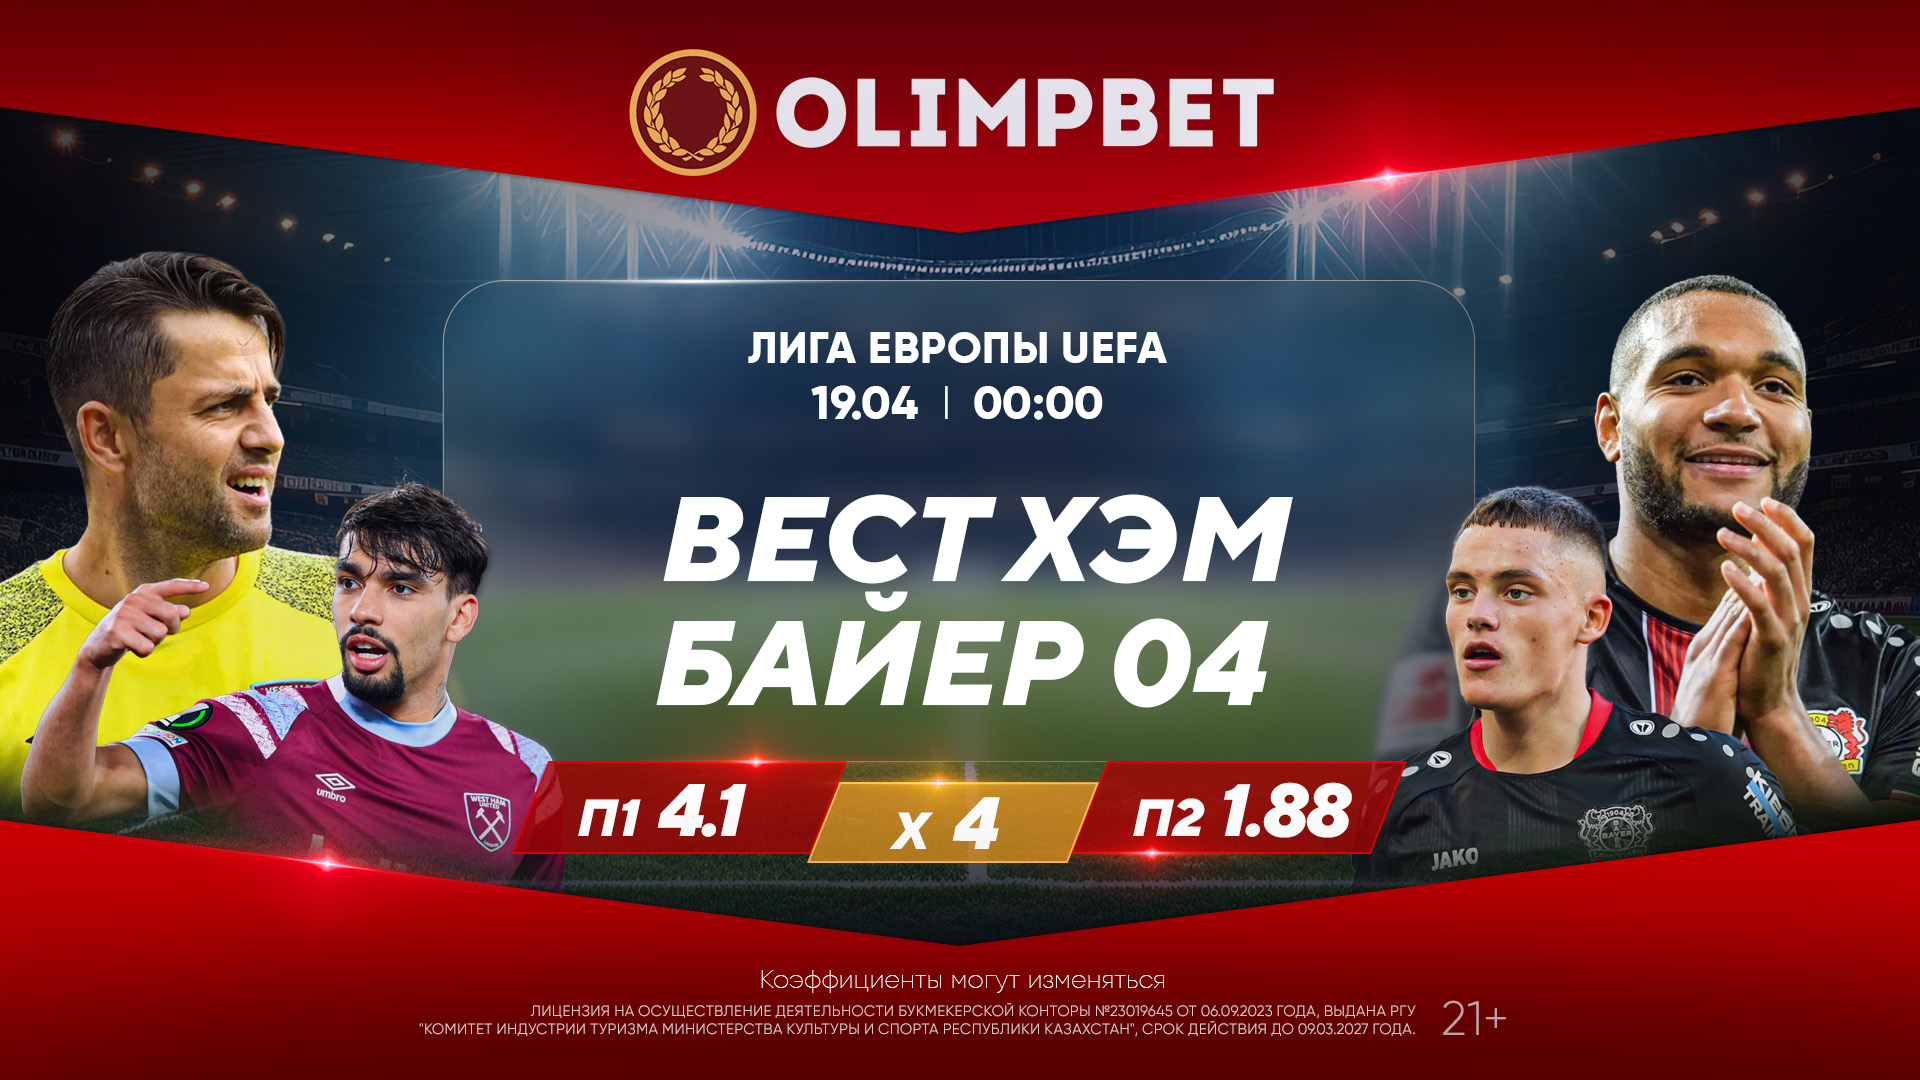 Ответные четвертьфиналы Лиги Европы – в коэффициентах Olimpbet